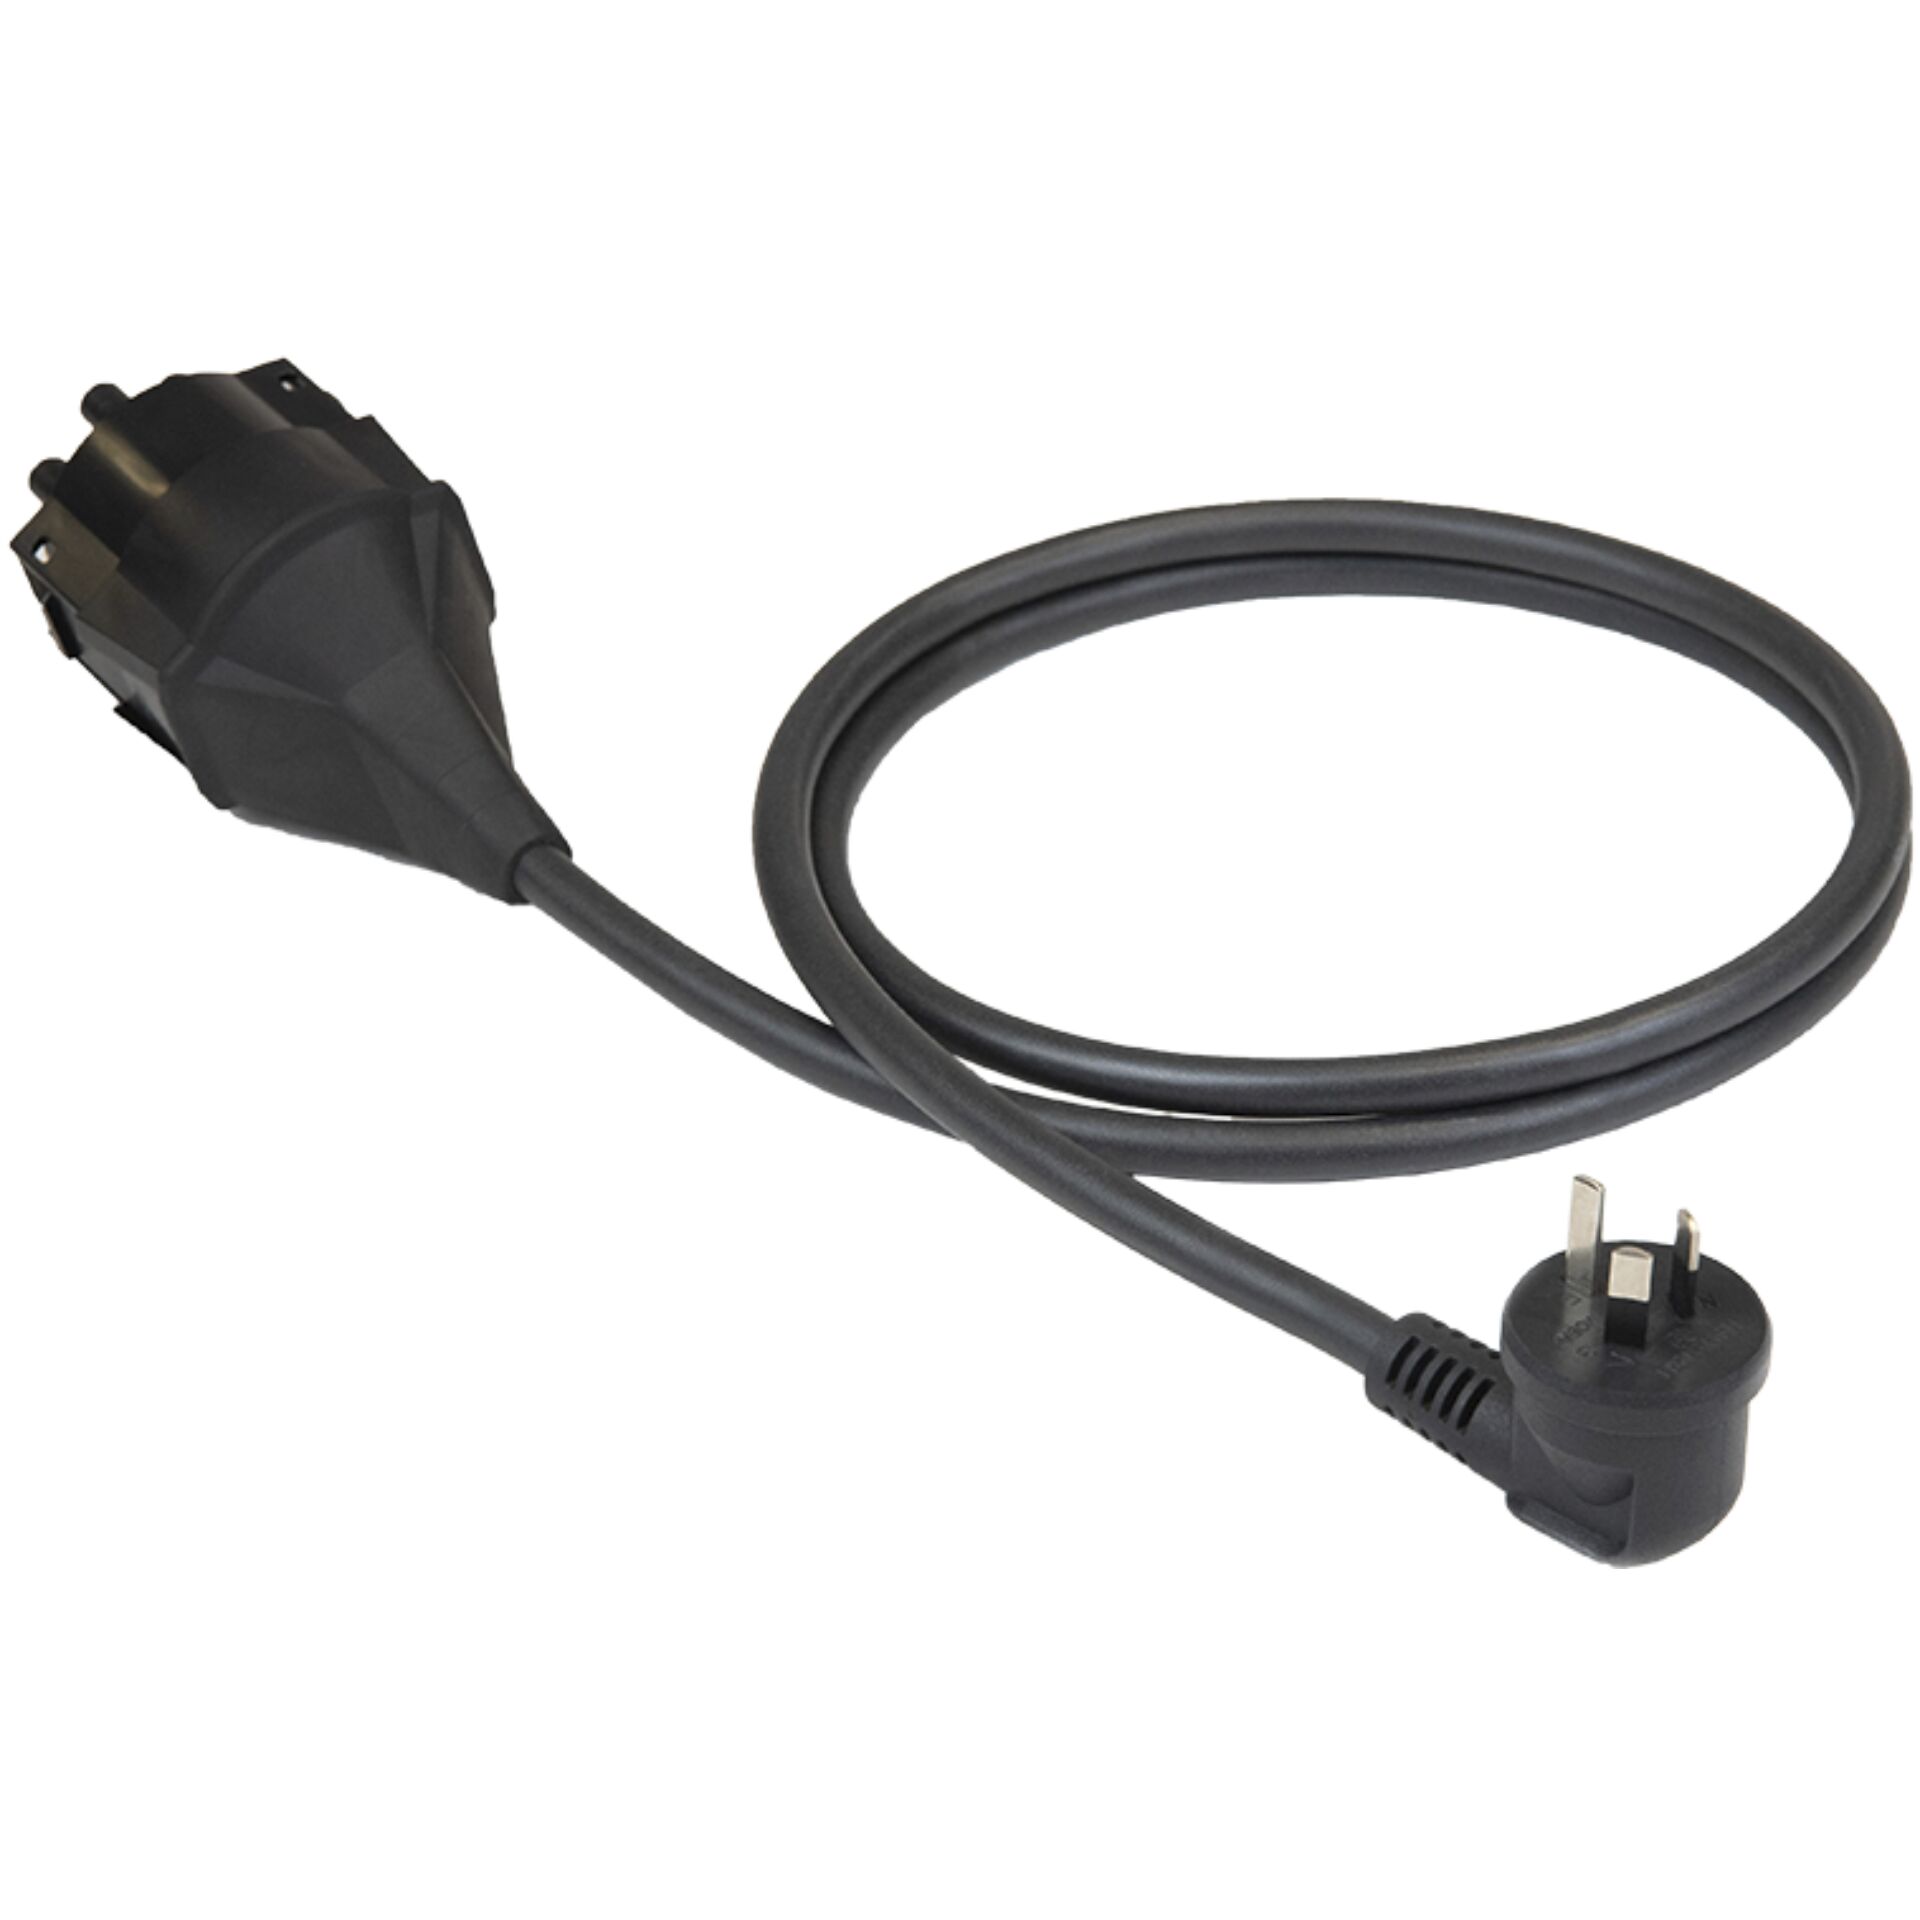 NRGkick Plug Attachment Type I AS 3112, 10A (AU)